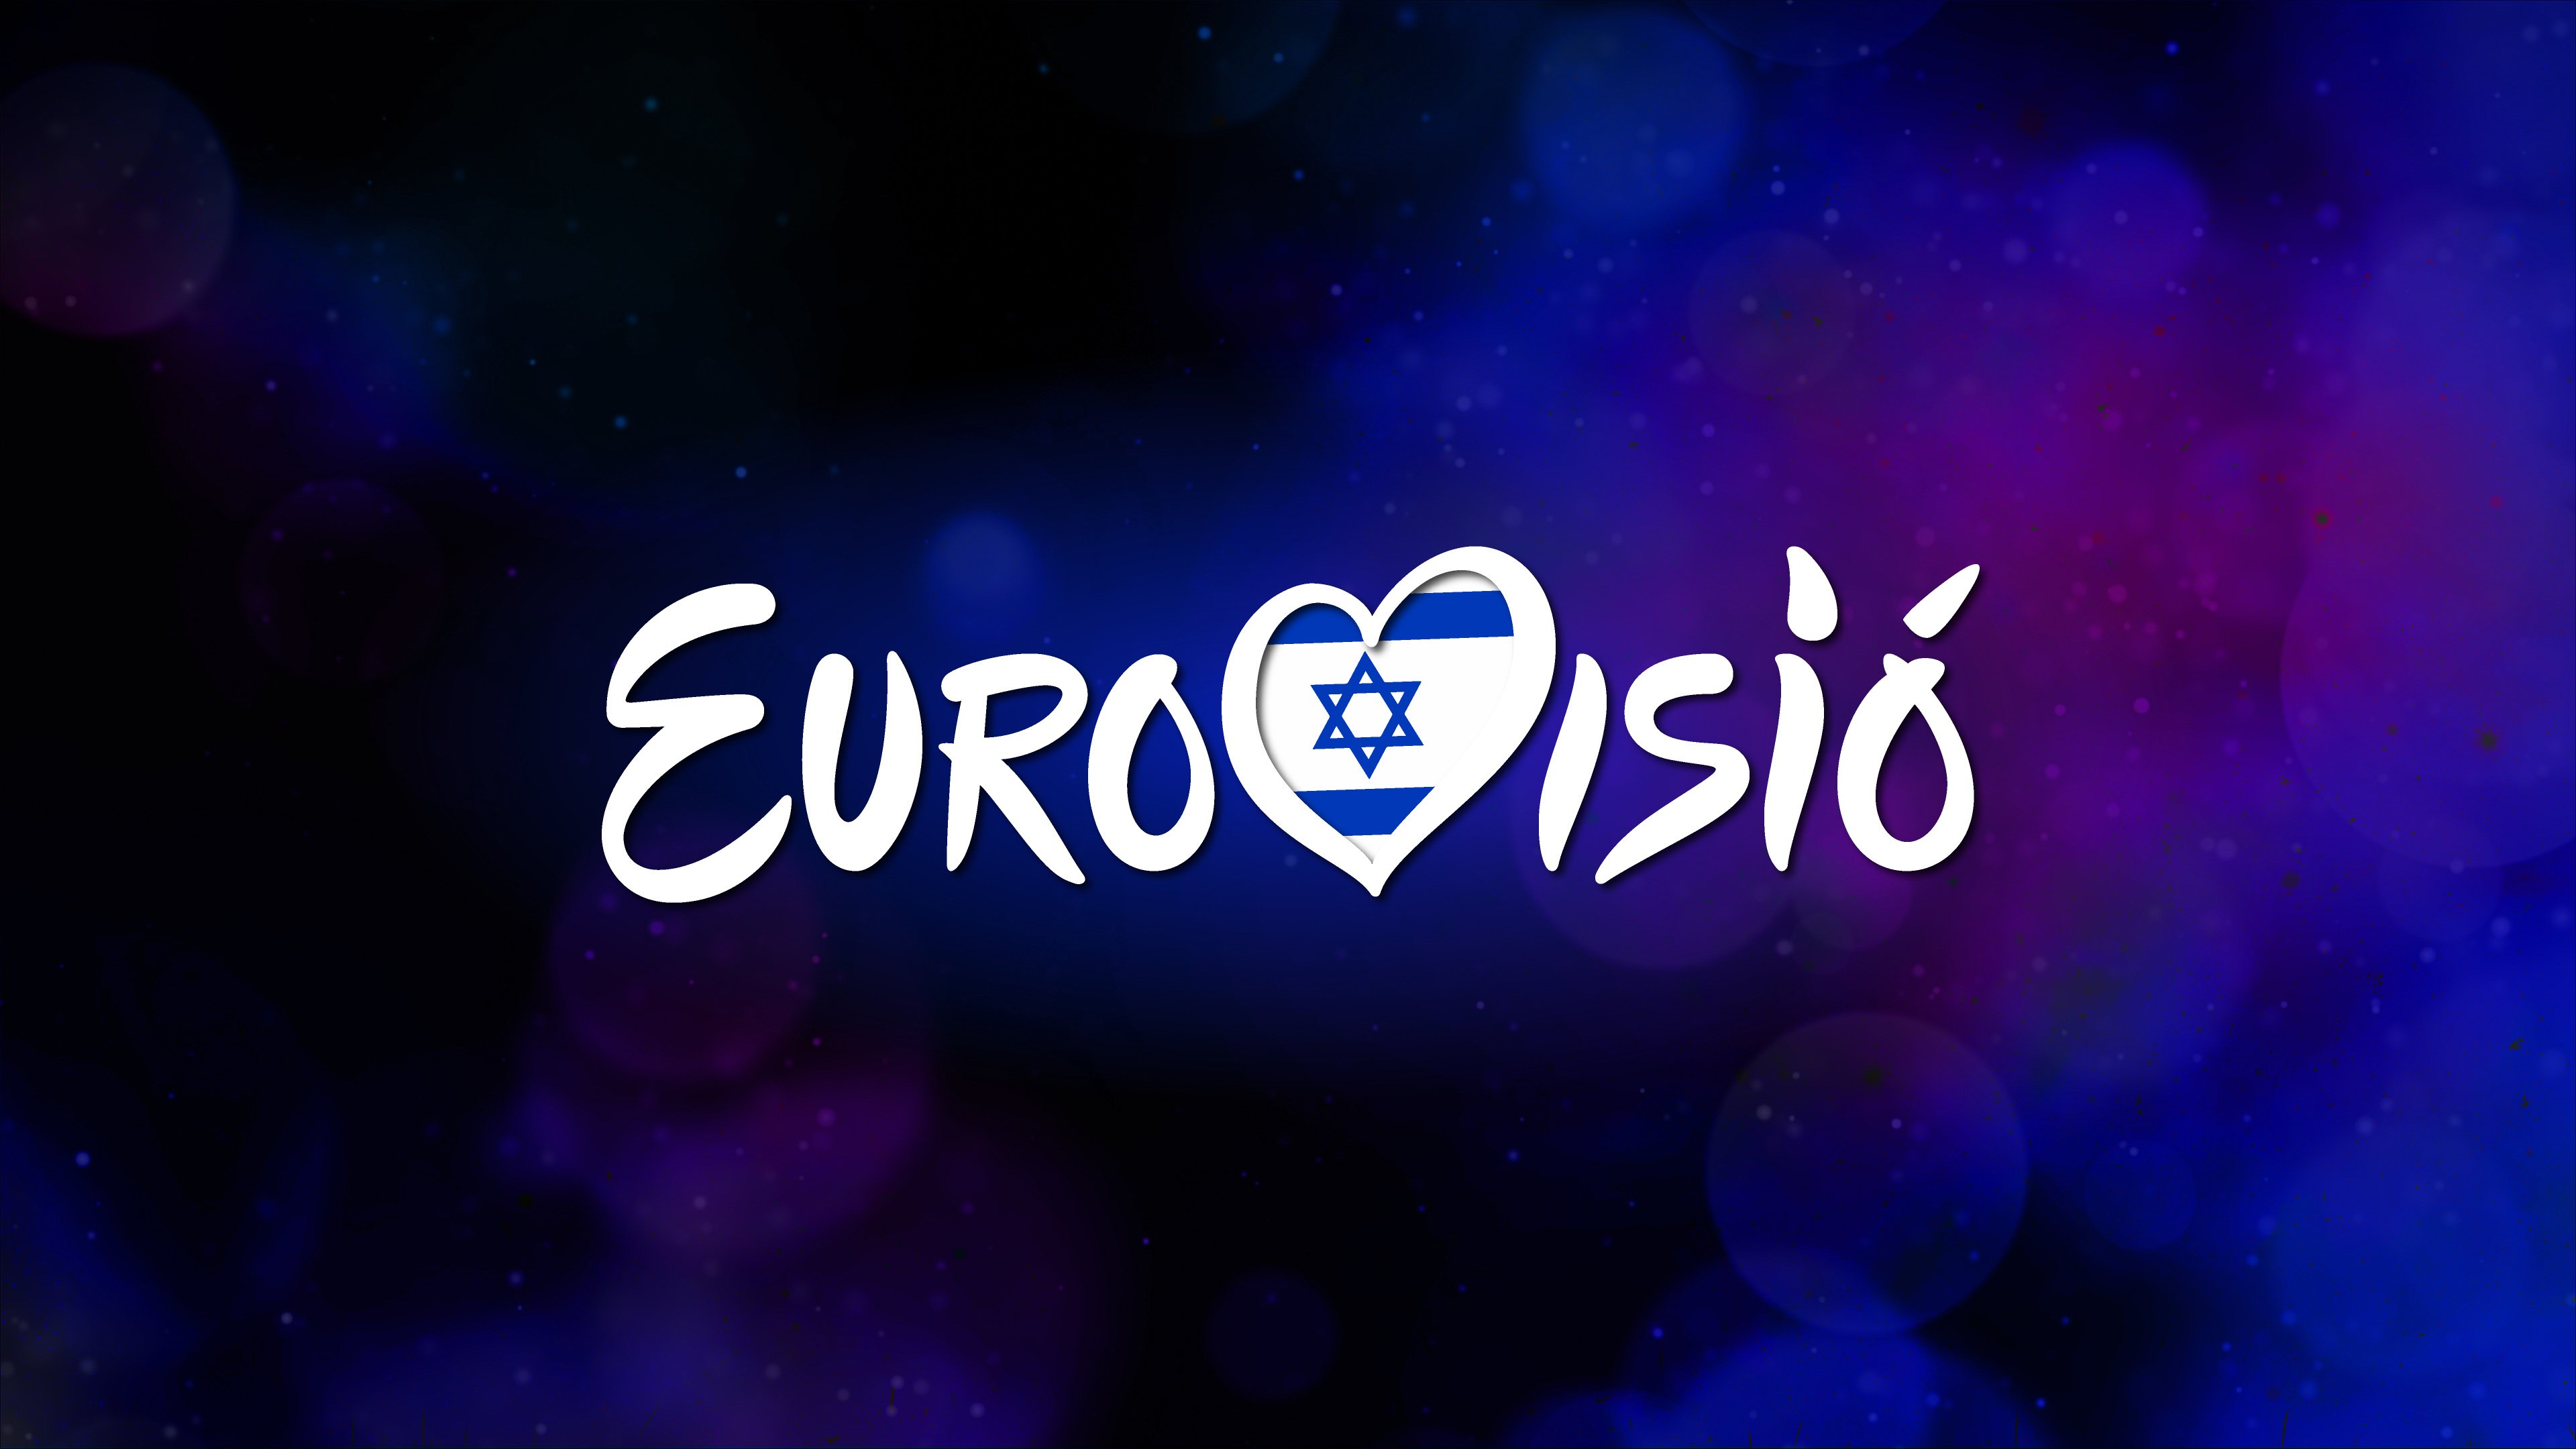 Así suenan las 41 canciones de Eurovisión 2019: ¿Cuál es tu preferida?